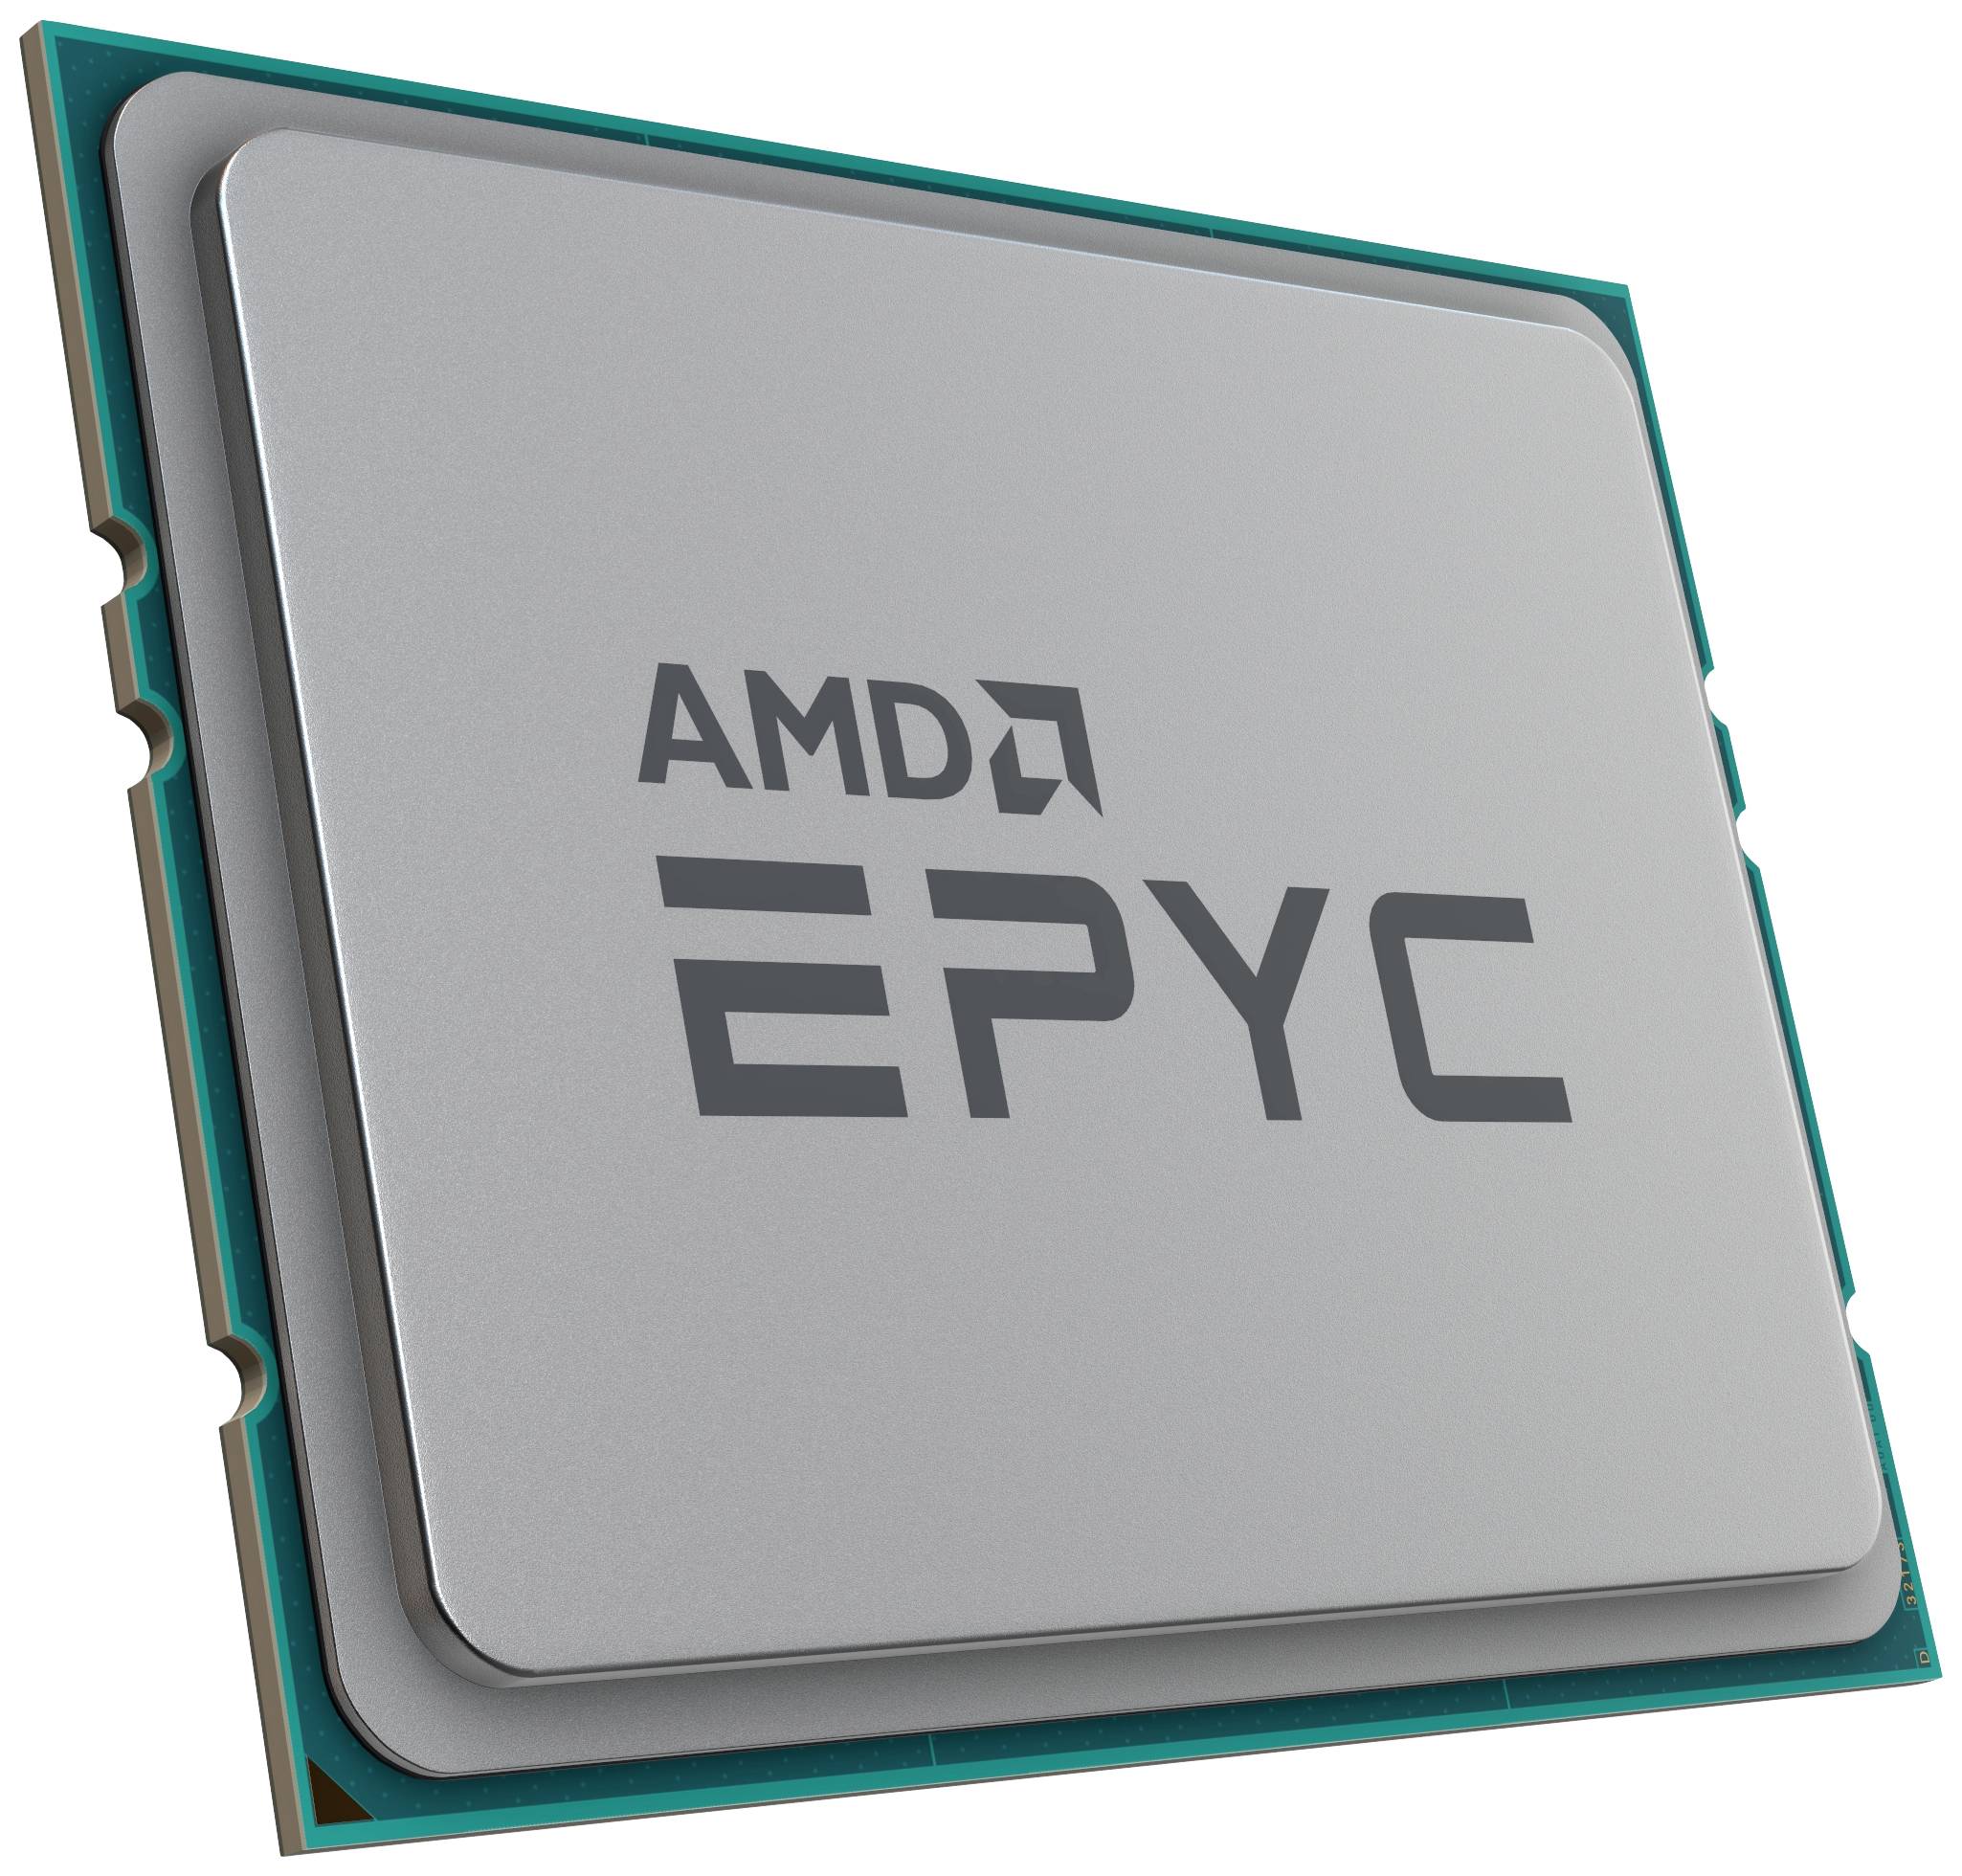 AMD EPYC 7302P SSP3 Tray